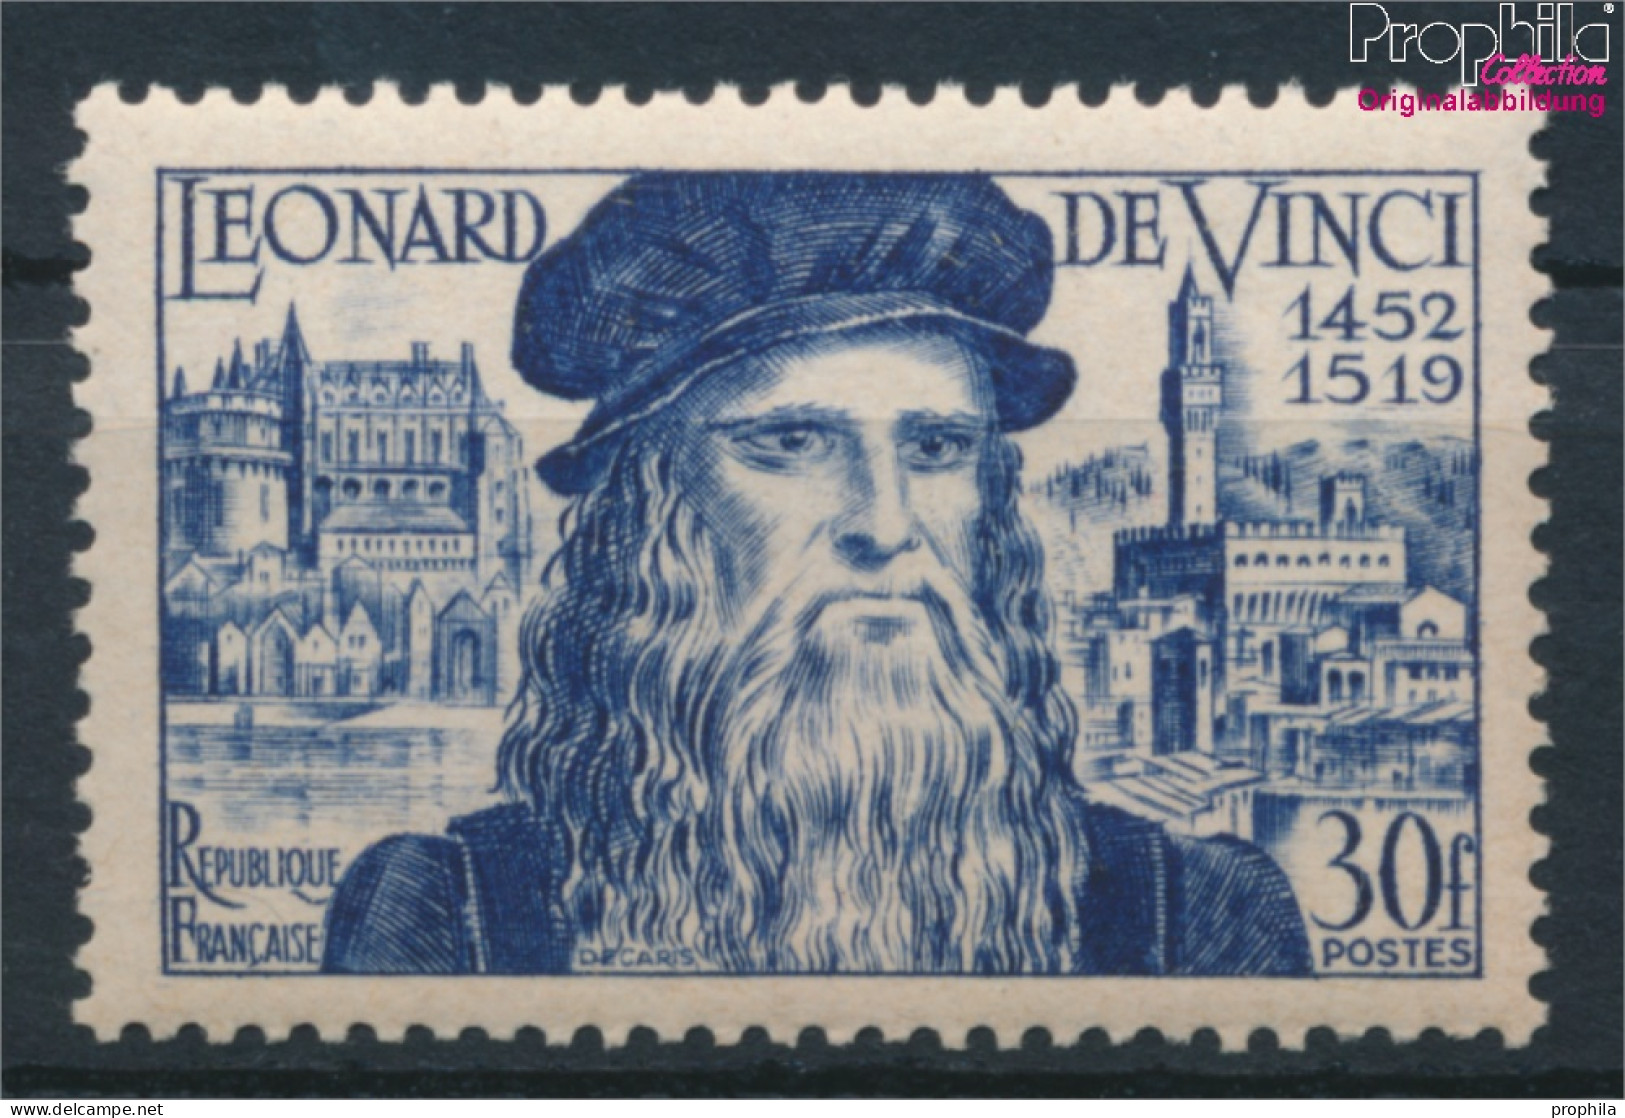 Frankreich 947 (kompl.Ausg.) Postfrisch 1952 Leonardo Da Vinci (10391204 - Neufs